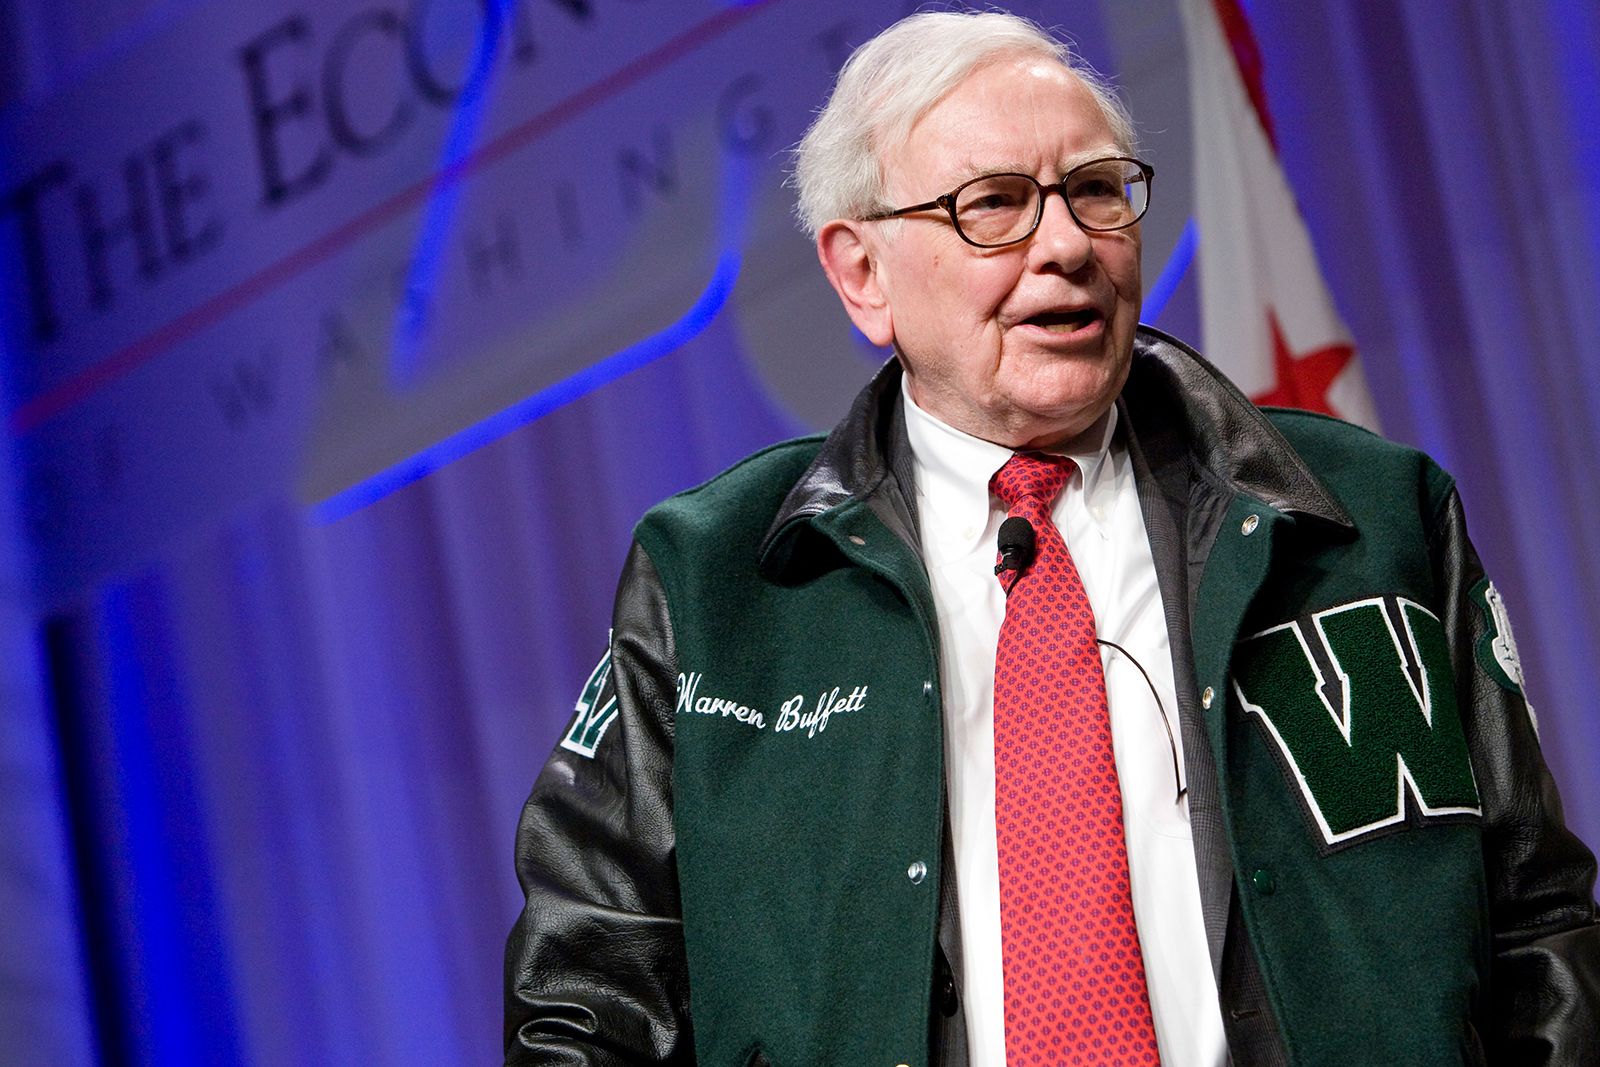 Tài sản của nhà đầu tư huyền thoại Warren Buffett thay đổi thế nào theo thời gian? - Ảnh 9.